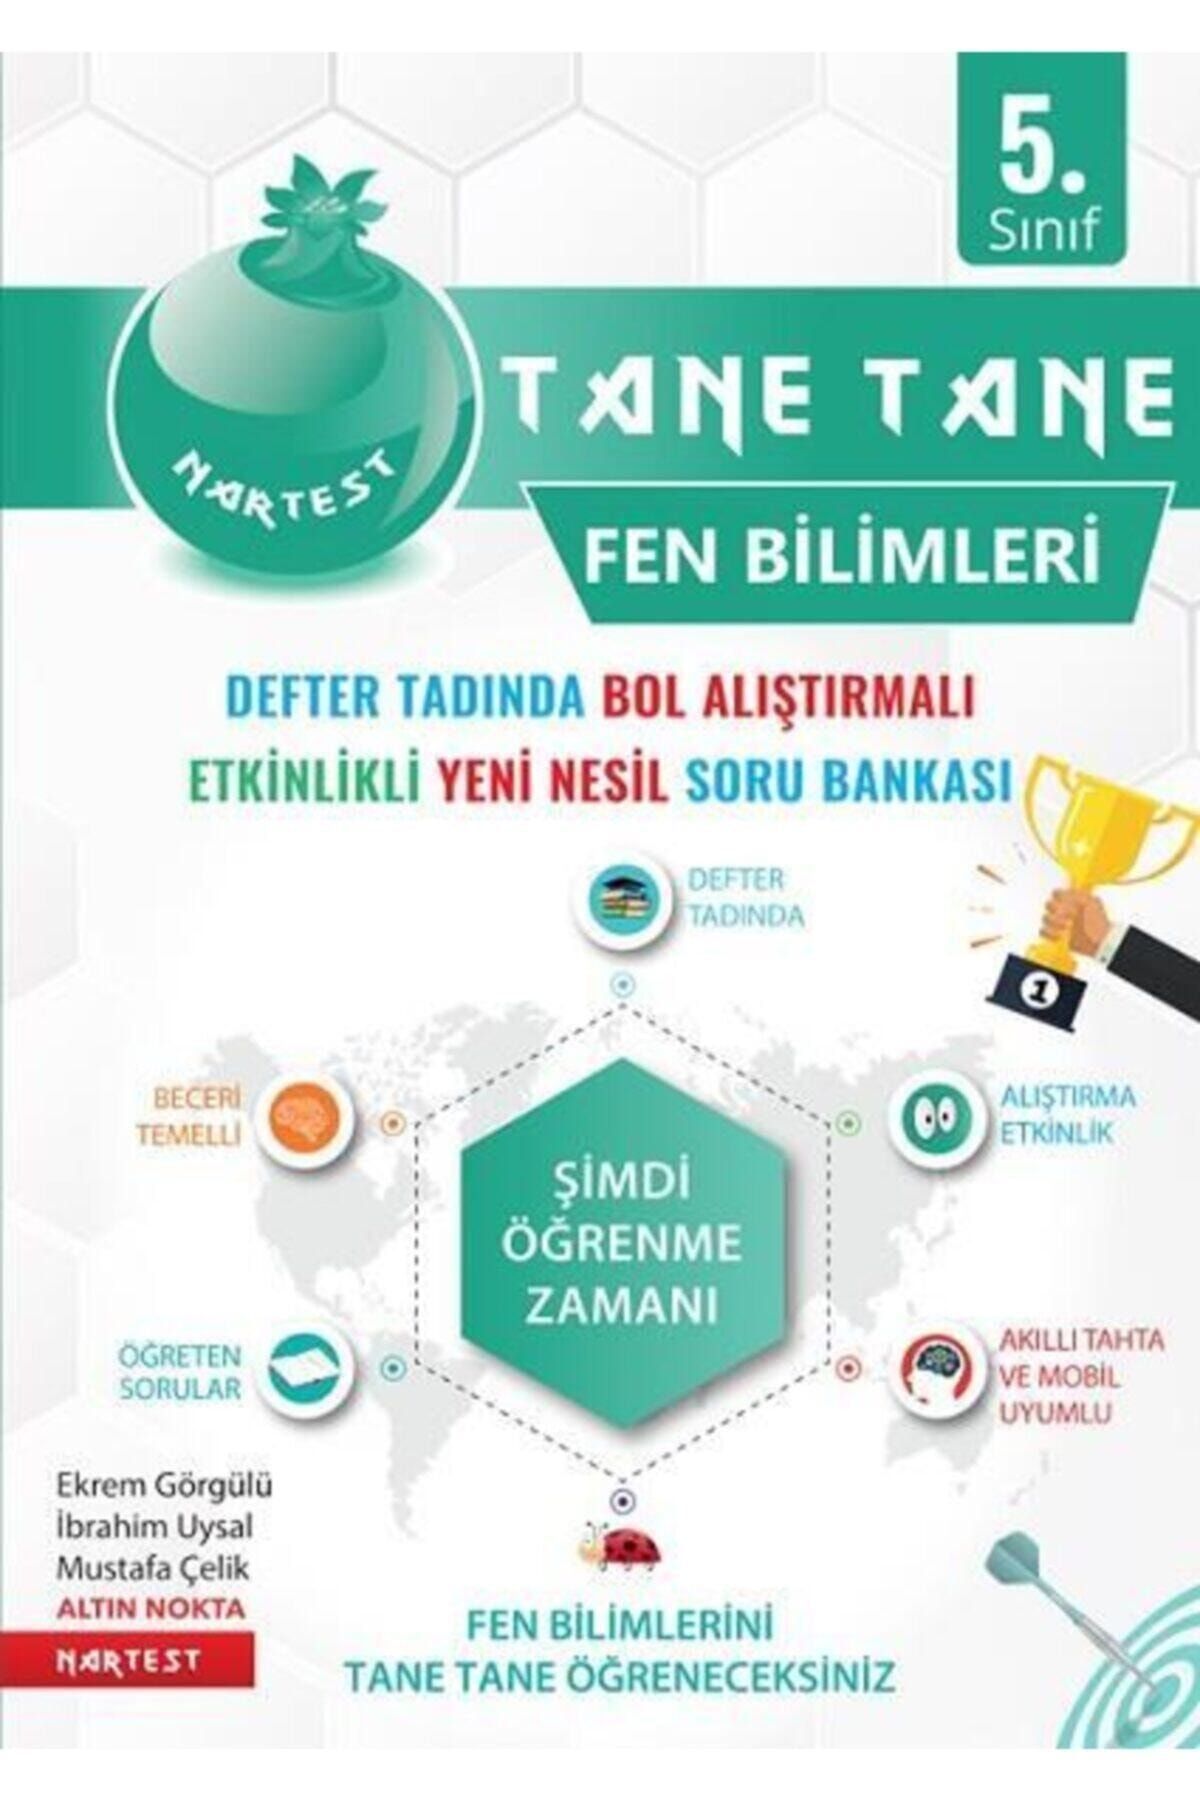 Nartest Yayınları 5. Sınıf Fen Bilimleri Tane Tane Defter Tadında Soru Bankası Yayınevi